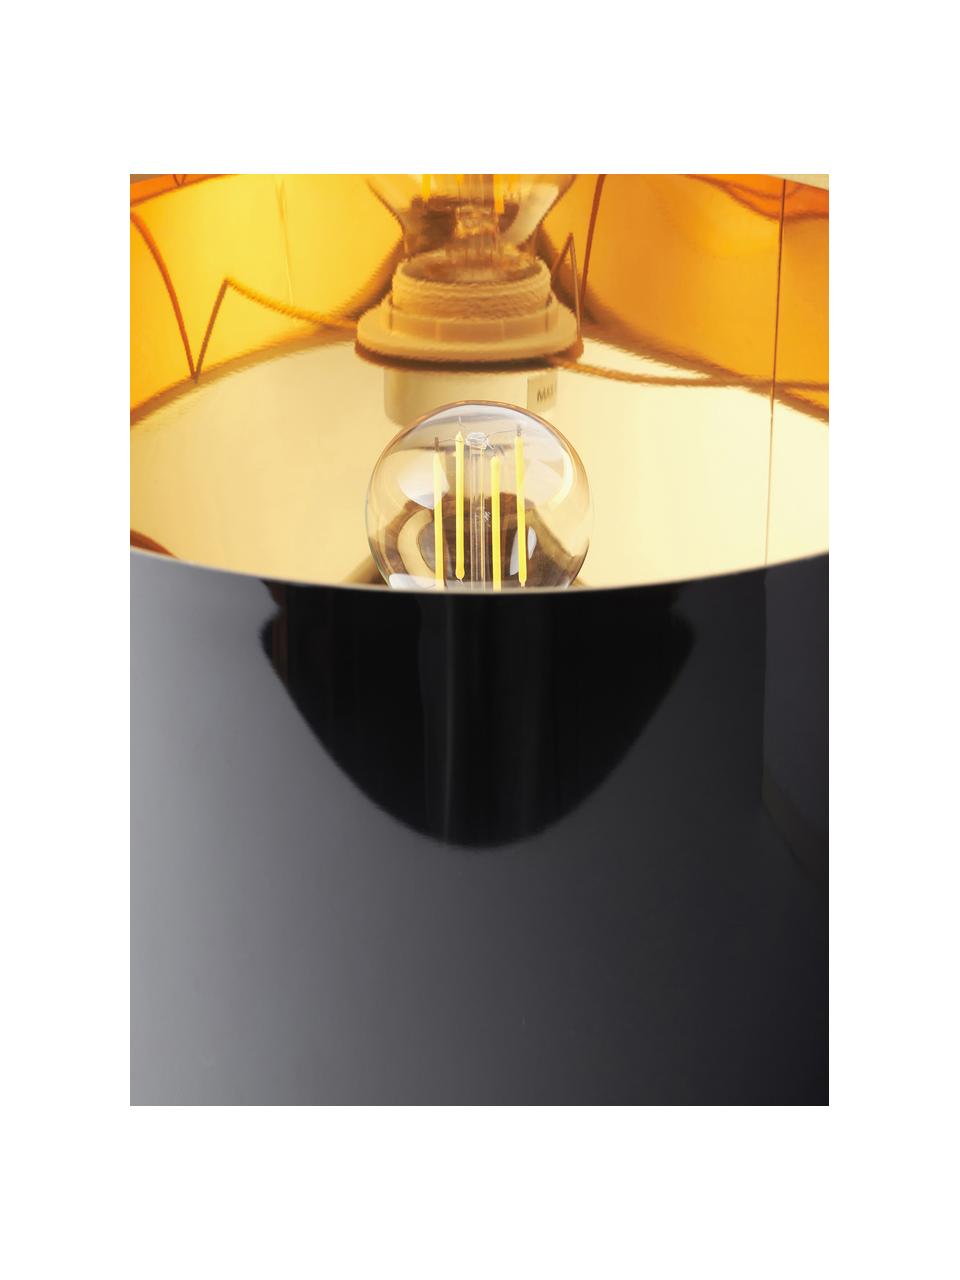 Tafellamp Mamo in marmerlook, Lampenkap: kunststof, Zwart, grijs, marmerlook, Ø 31 x H 38 cm